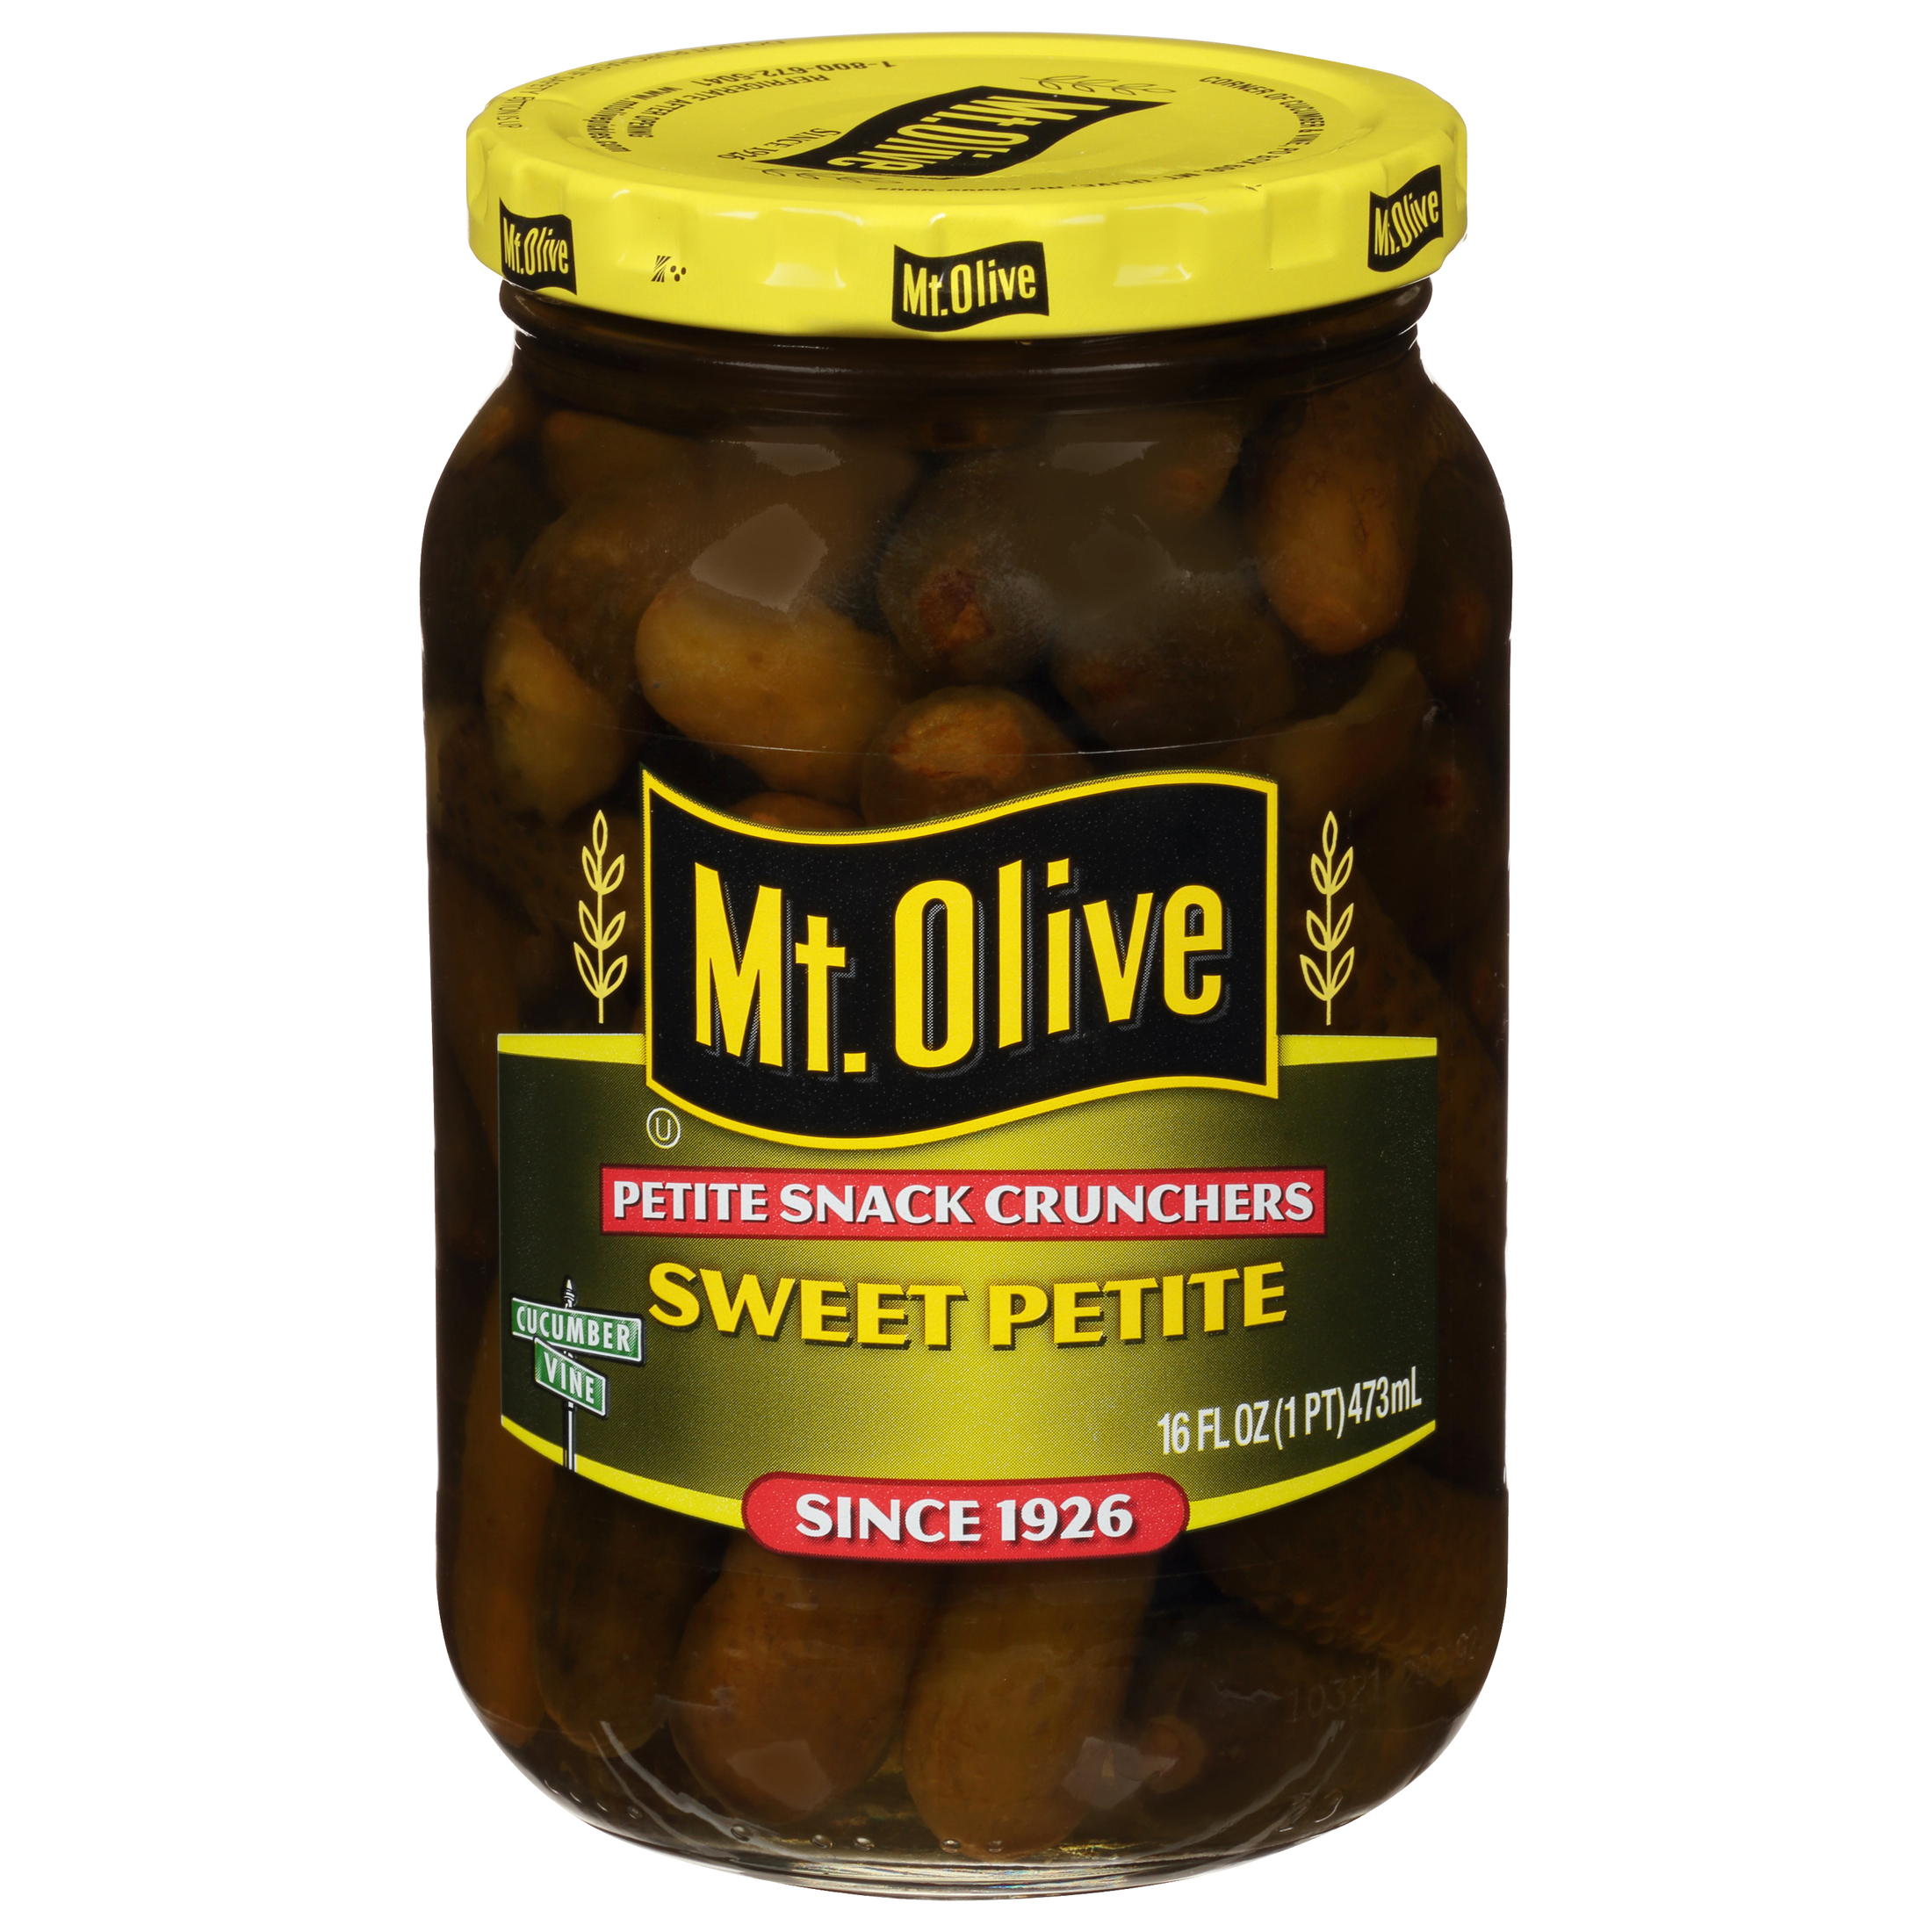 Mt. Olive Sweet Petite Snack Cruncher Pickles, 16 fl oz Jar - image 3 of 5